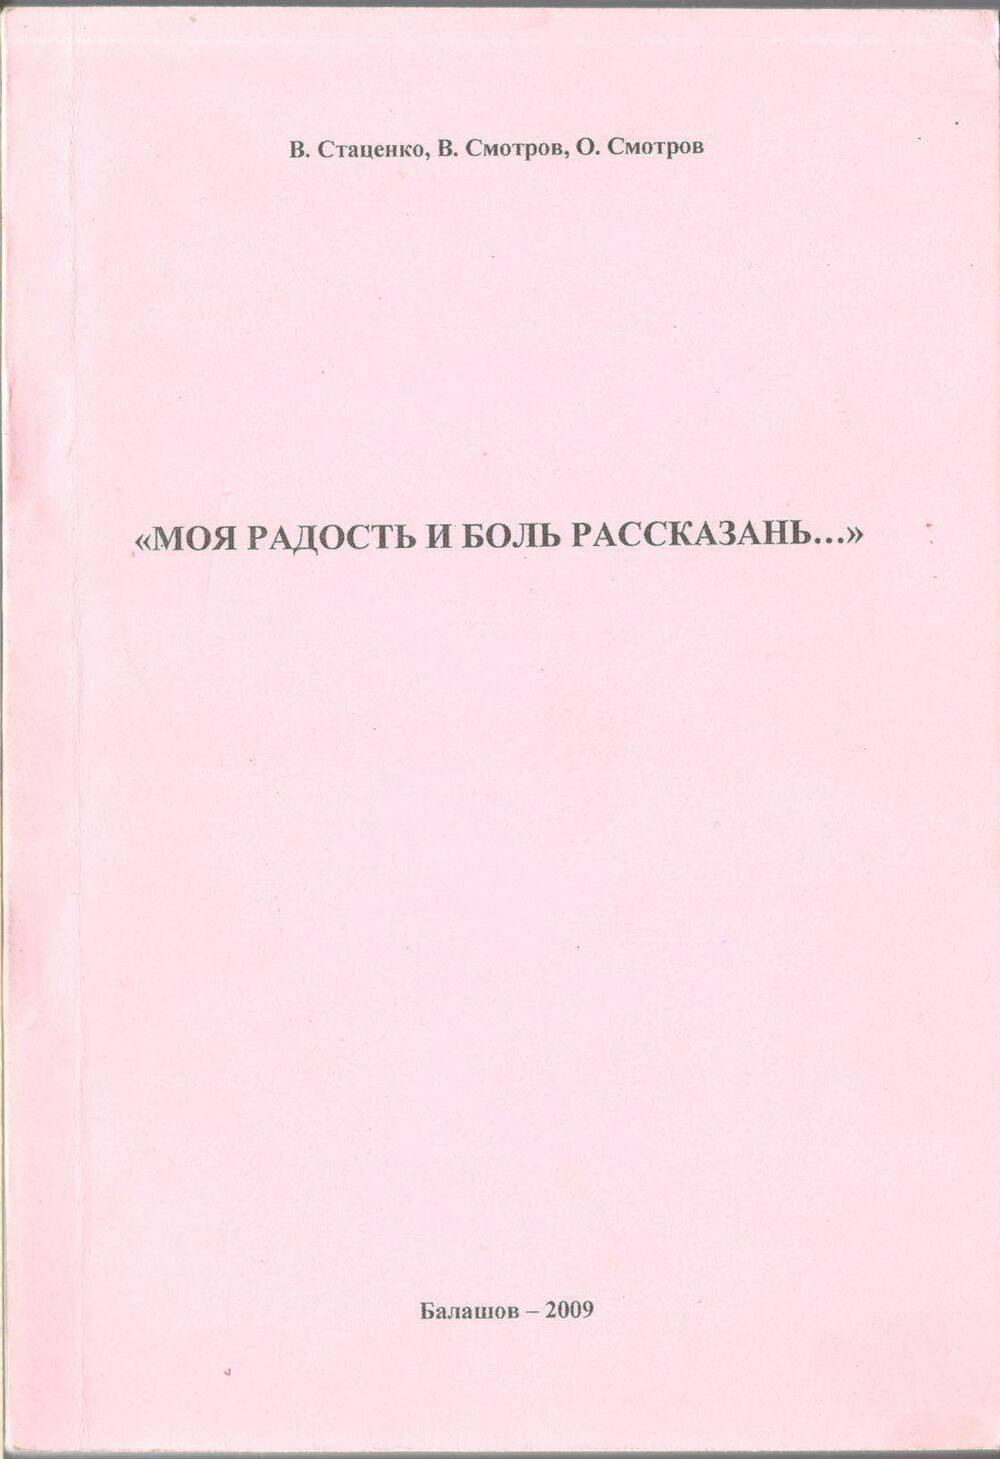 Книга «Моя радость и боль Рассказань»
В.Стаценко, В.Смотров, О.Смотров.